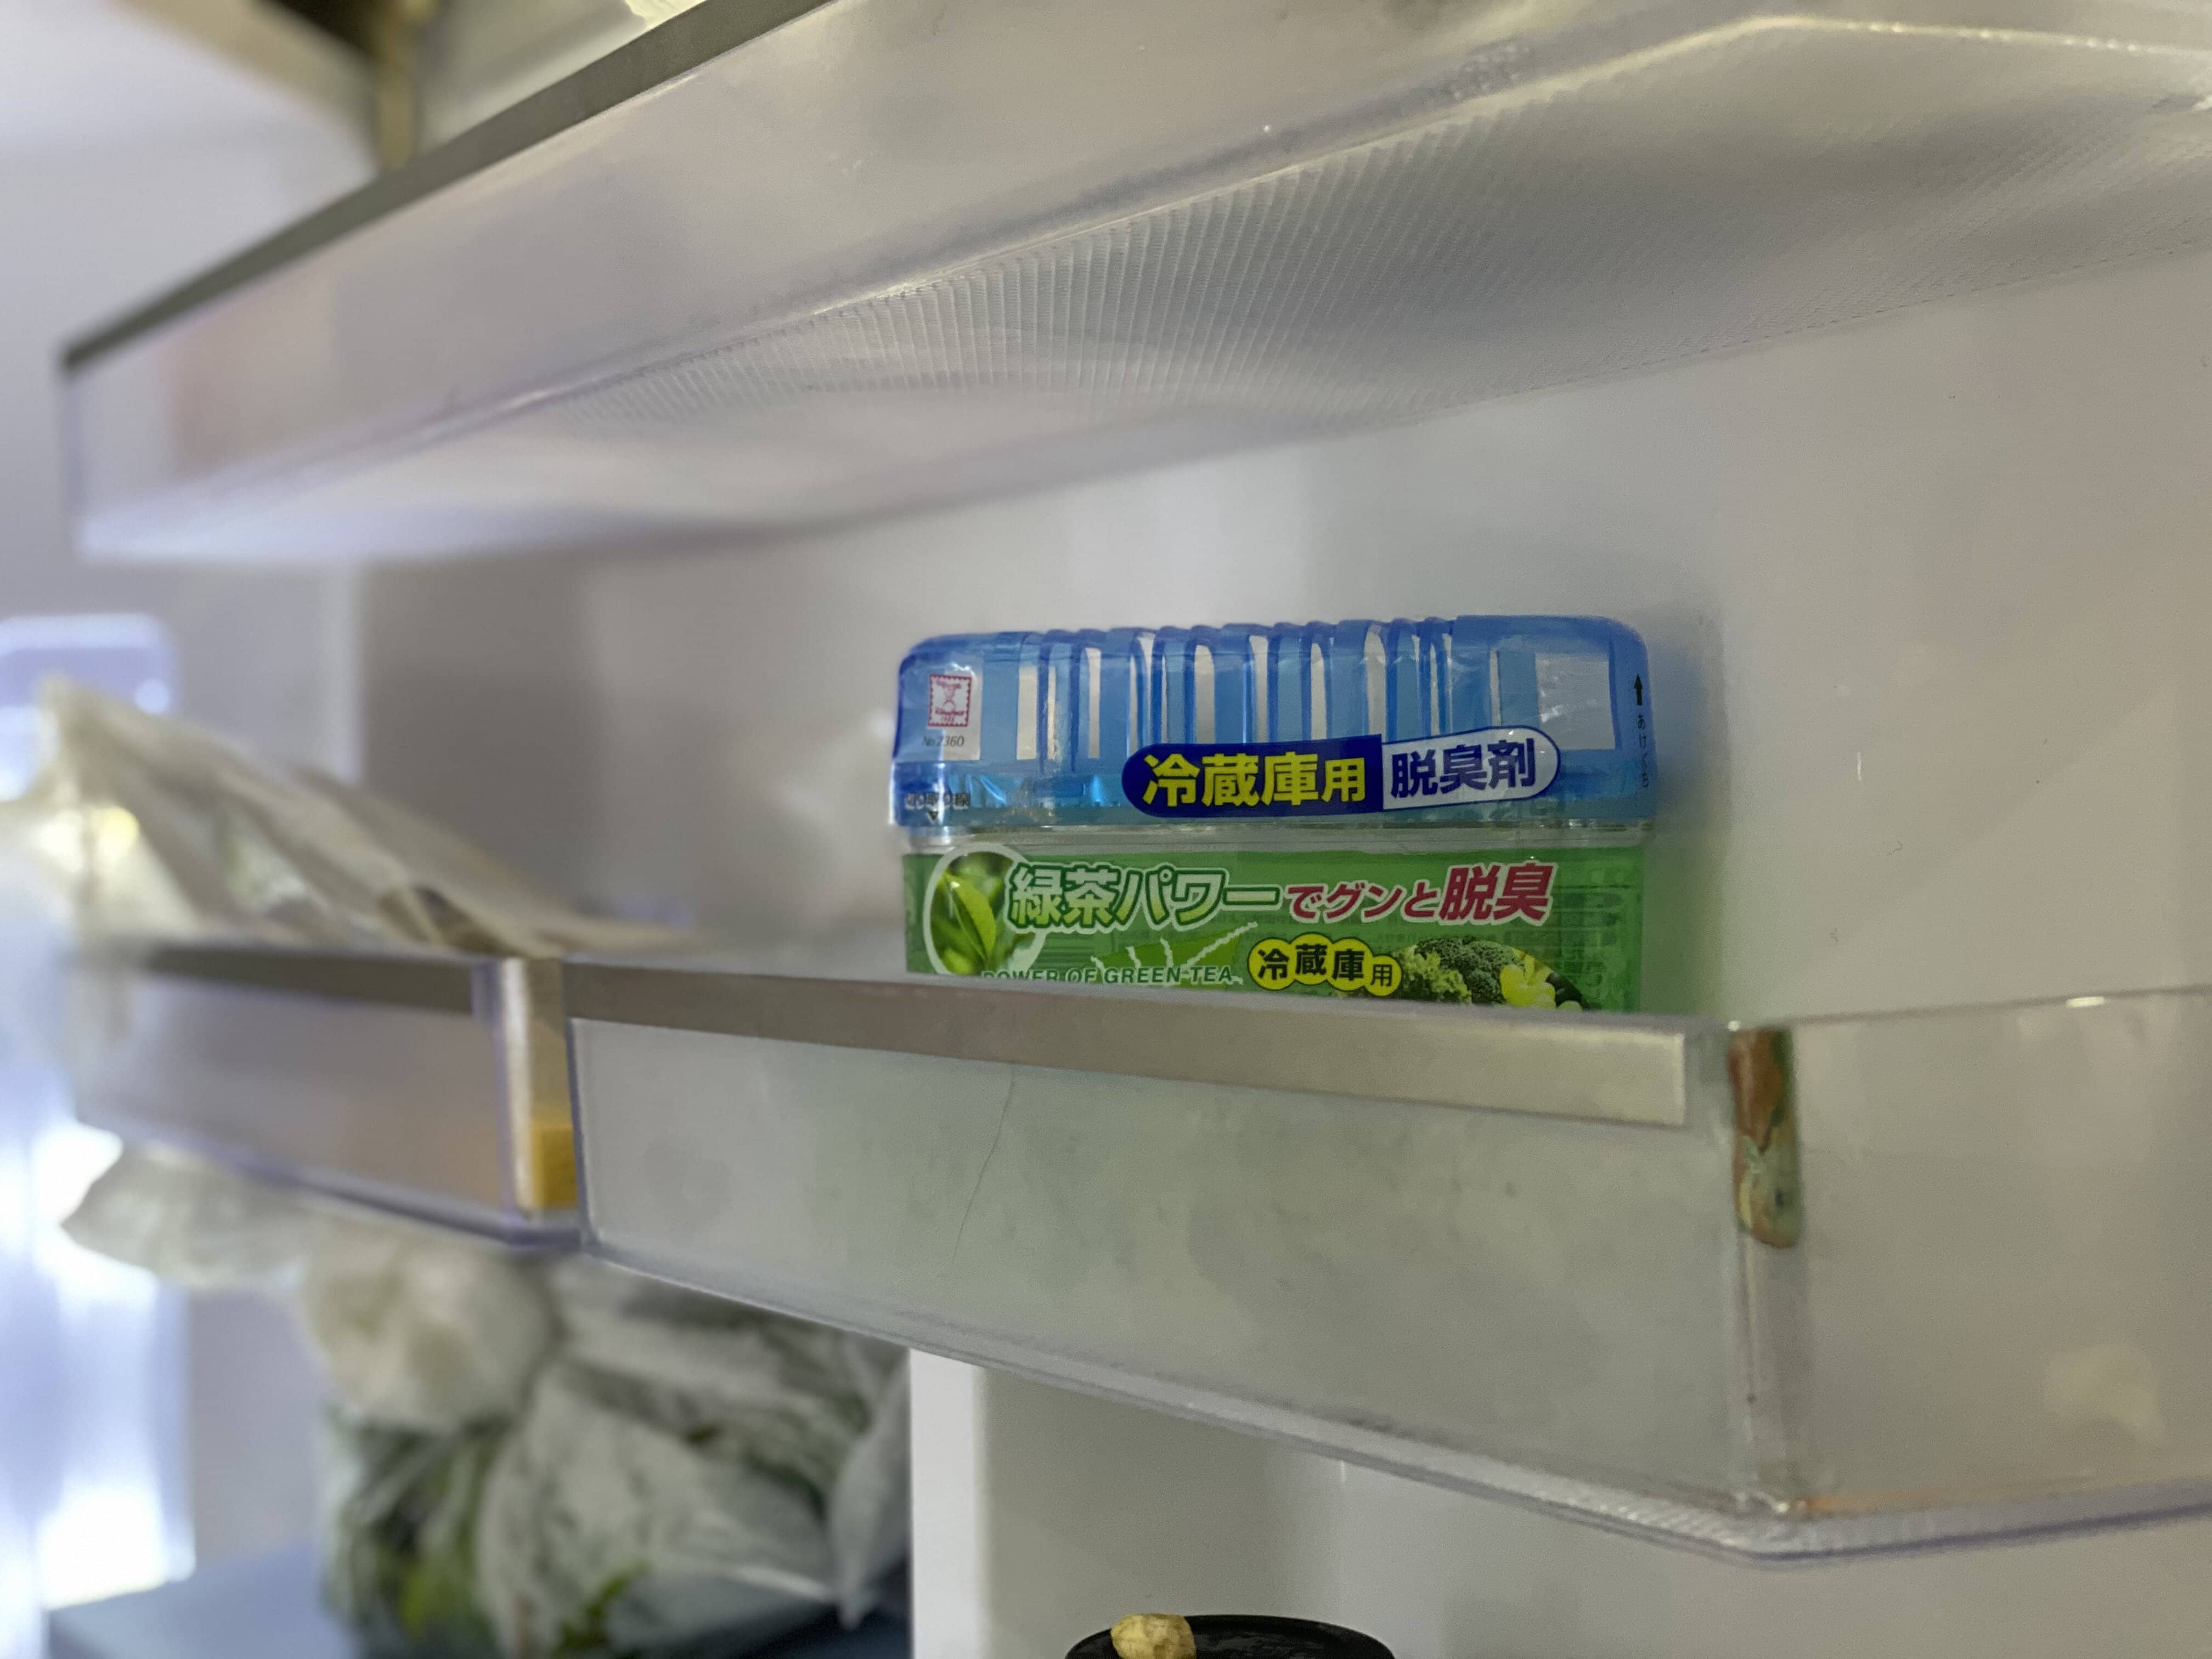 Combo Hộp Khử Mùi Tủ Lạnh Hương Trà Xanh Nhật Bản (150g)